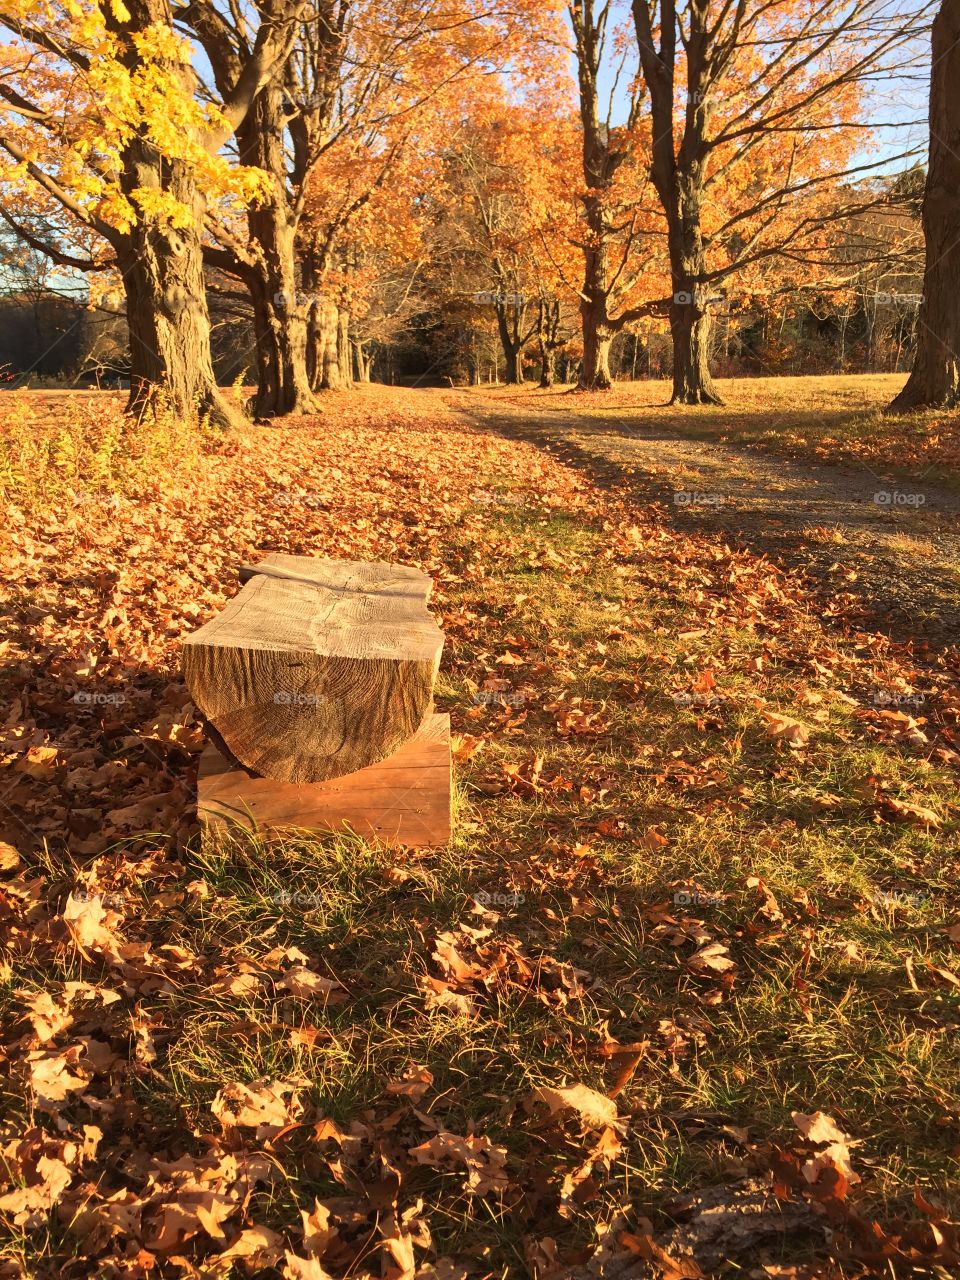 Brookwood Farm - Milton Massachusetts in Fall